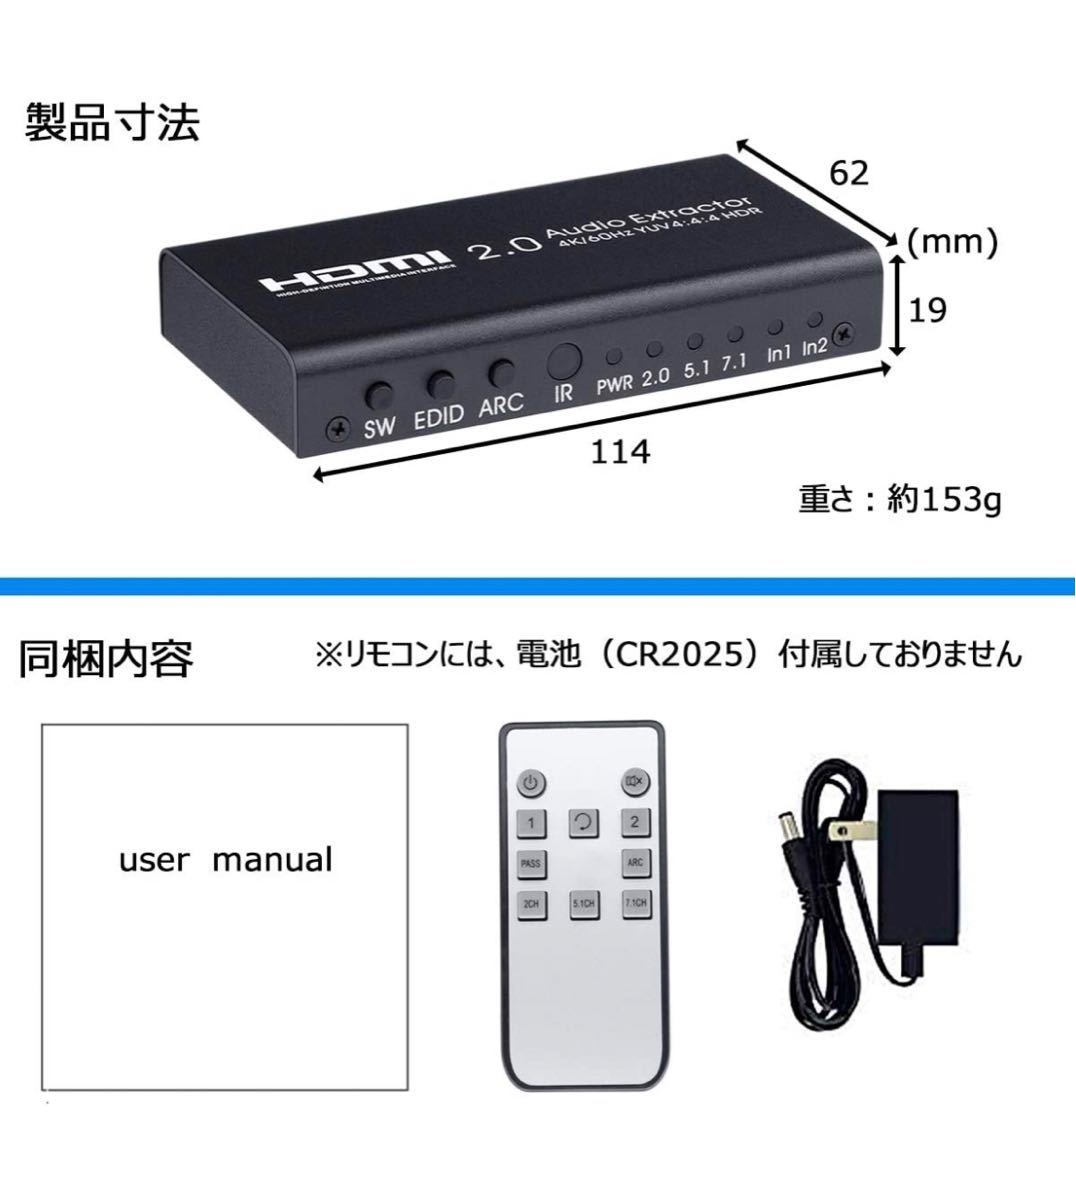 HDMI 切替器 音声 分離器 4K/60Hz HDR対応 2入力1出力